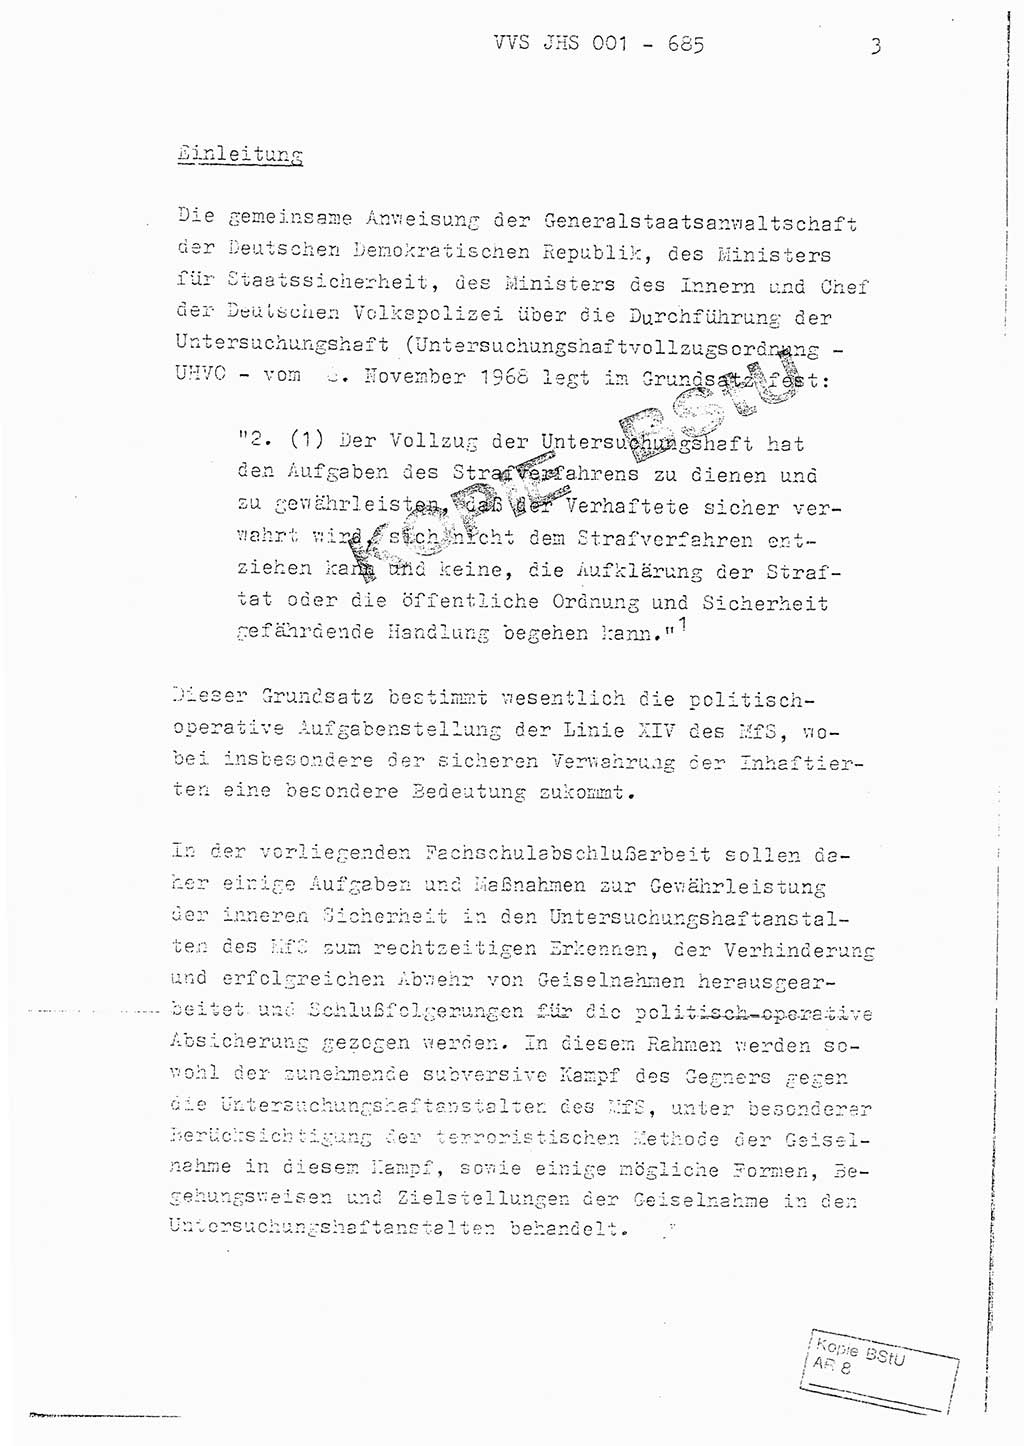 Fachschulabschlußarbeit Oberleutnant Helmut Peckruhn (BV Bln. Abt. ⅩⅣ), Ministerium für Staatssicherheit (MfS) [Deutsche Demokratische Republik (DDR)], Juristische Hochschule (JHS), Vertrauliche Verschlußsache (VVS) 001-685/79, Potsdam 1979, Seite 3 (FS-Abschl.-Arb. MfS DDR JHS VVS 001-685/79 1979, S. 3)